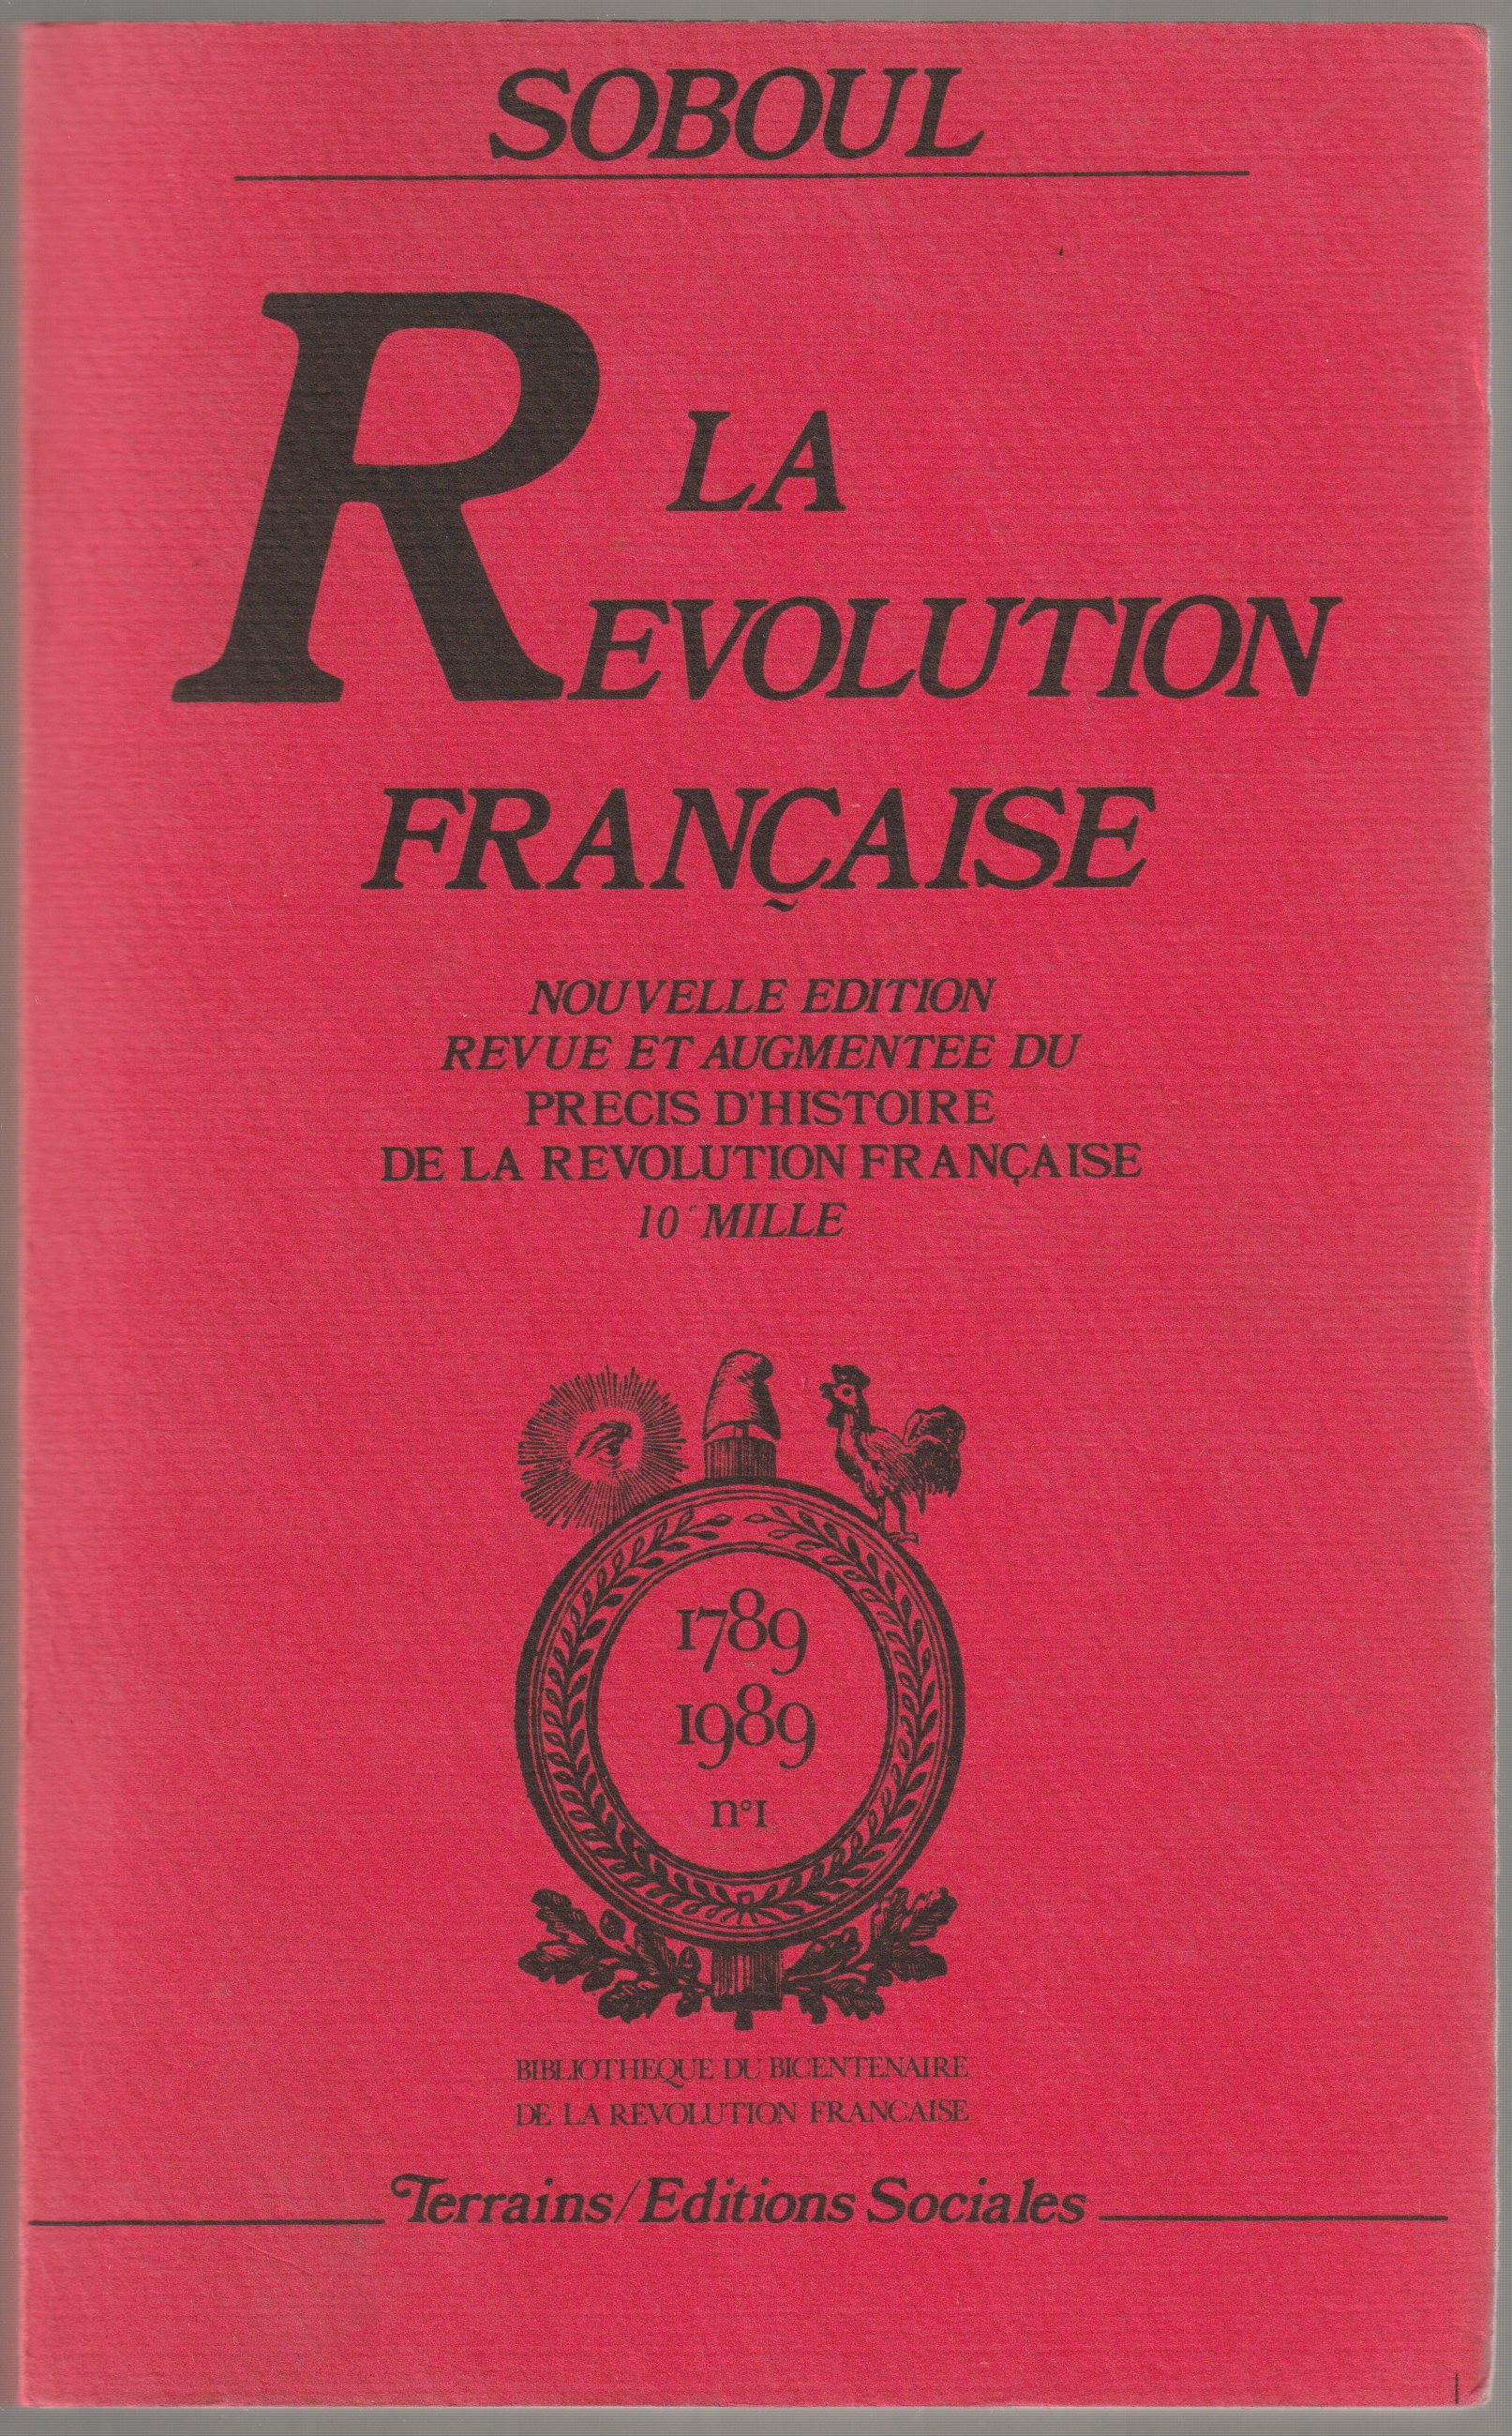 La Revolution francaise.